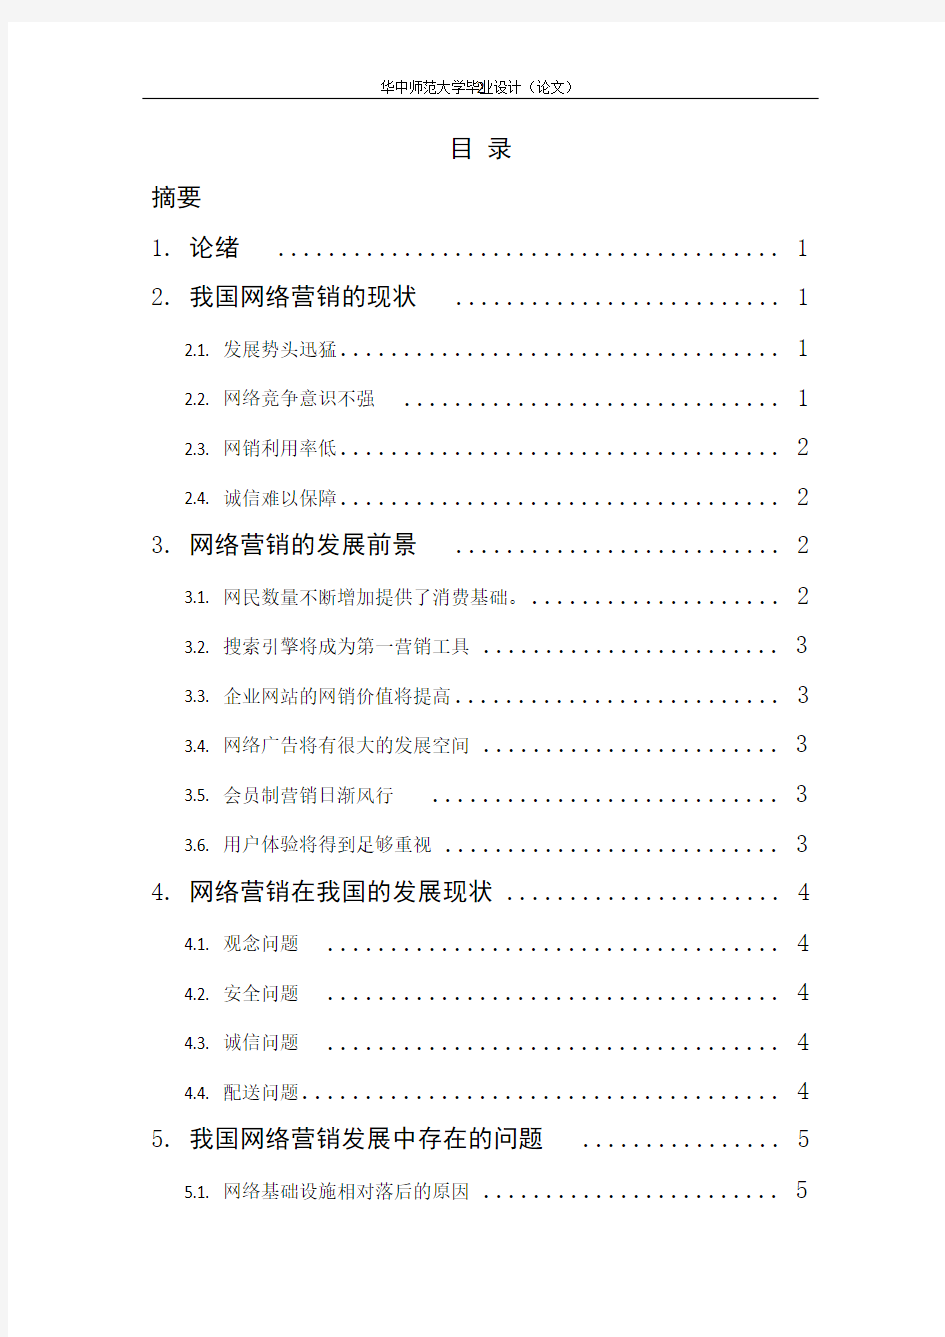 11.29中国网络营销现状及前景分析